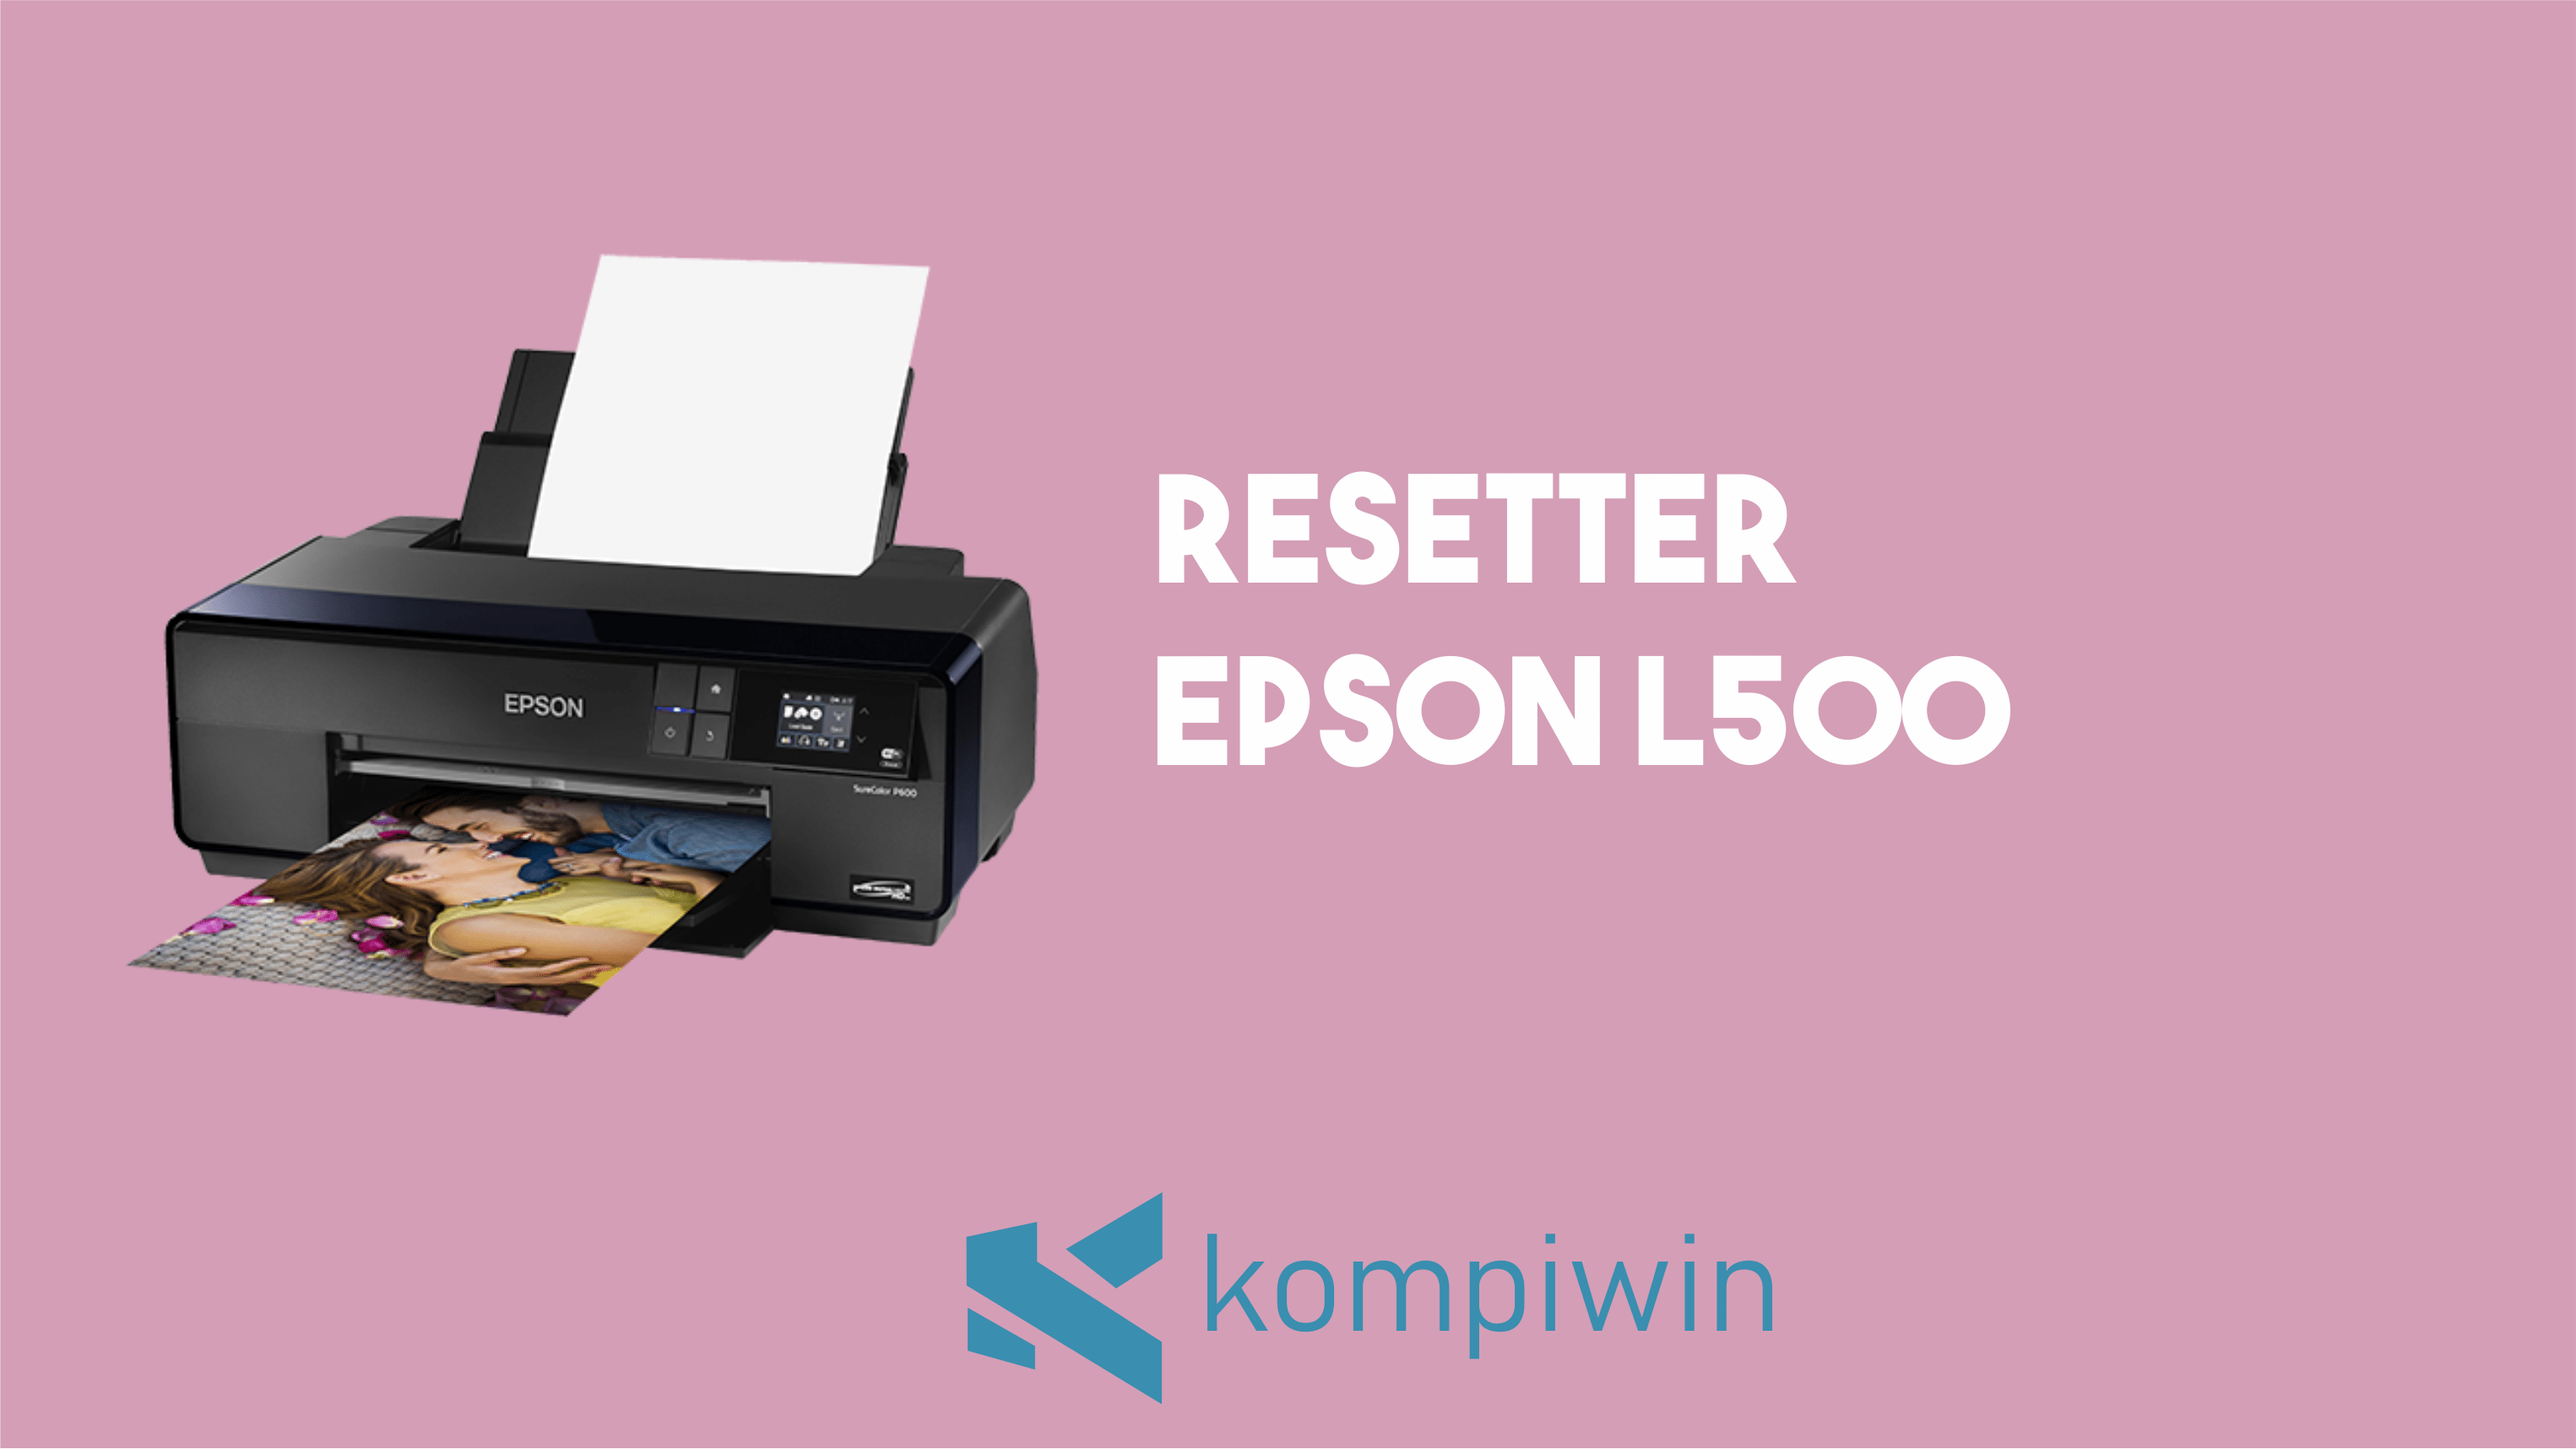 Resetter Epson L500